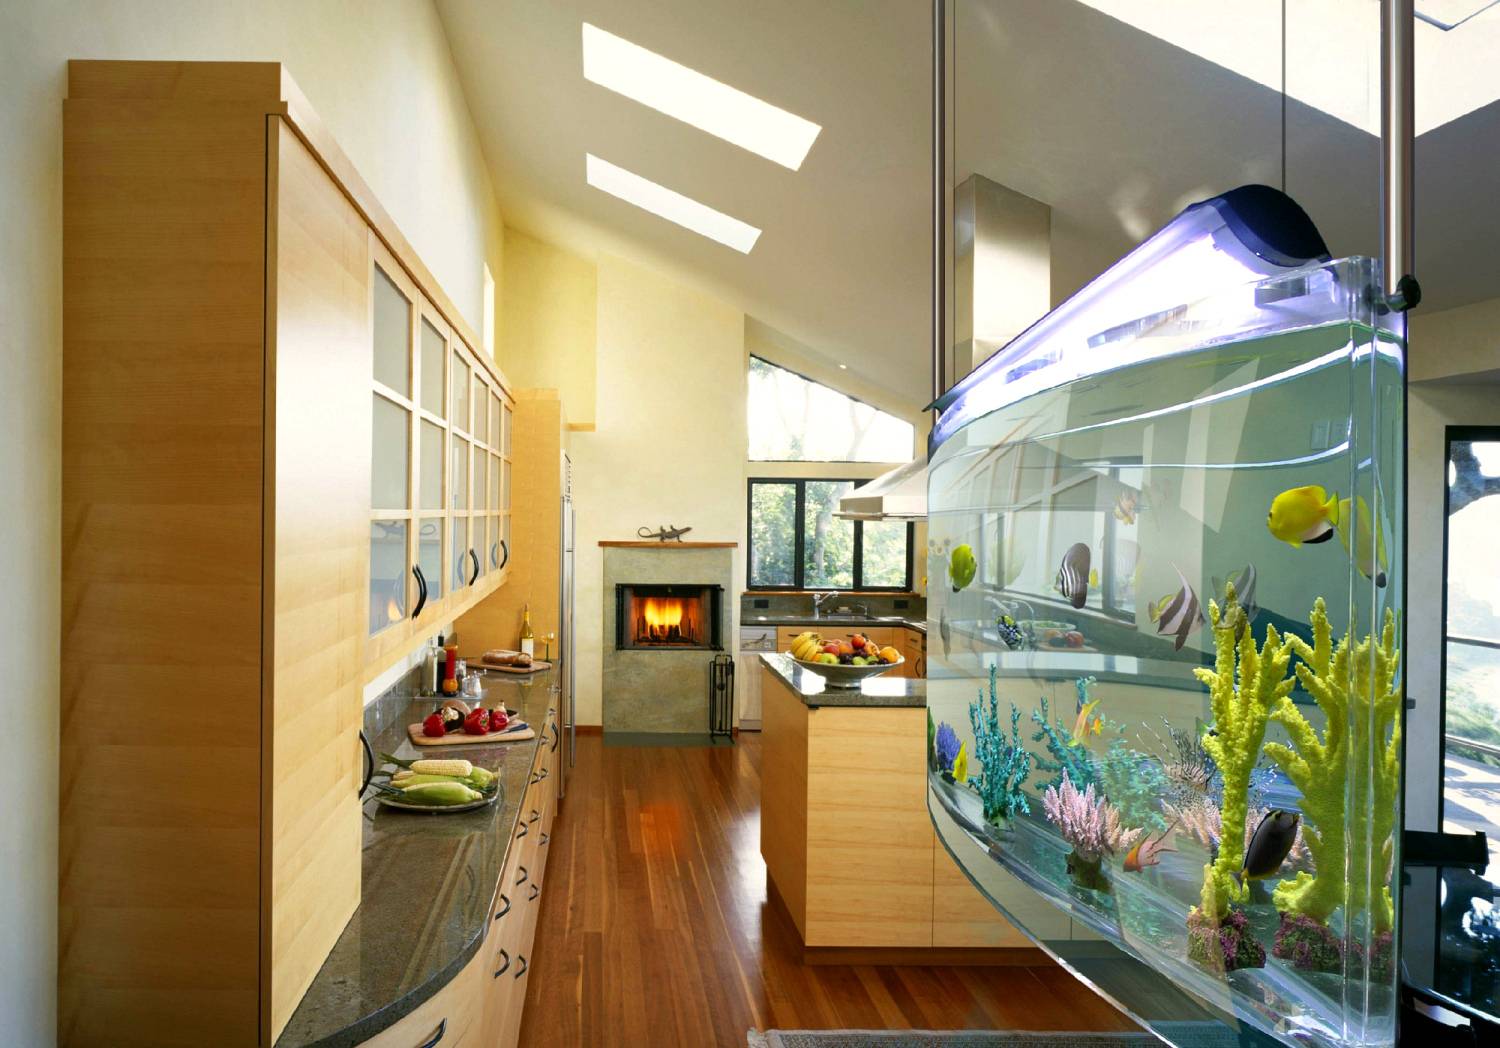 Круглый аквариум в интерьере — как использовать в качестве элемента дизайна? (70 фото)